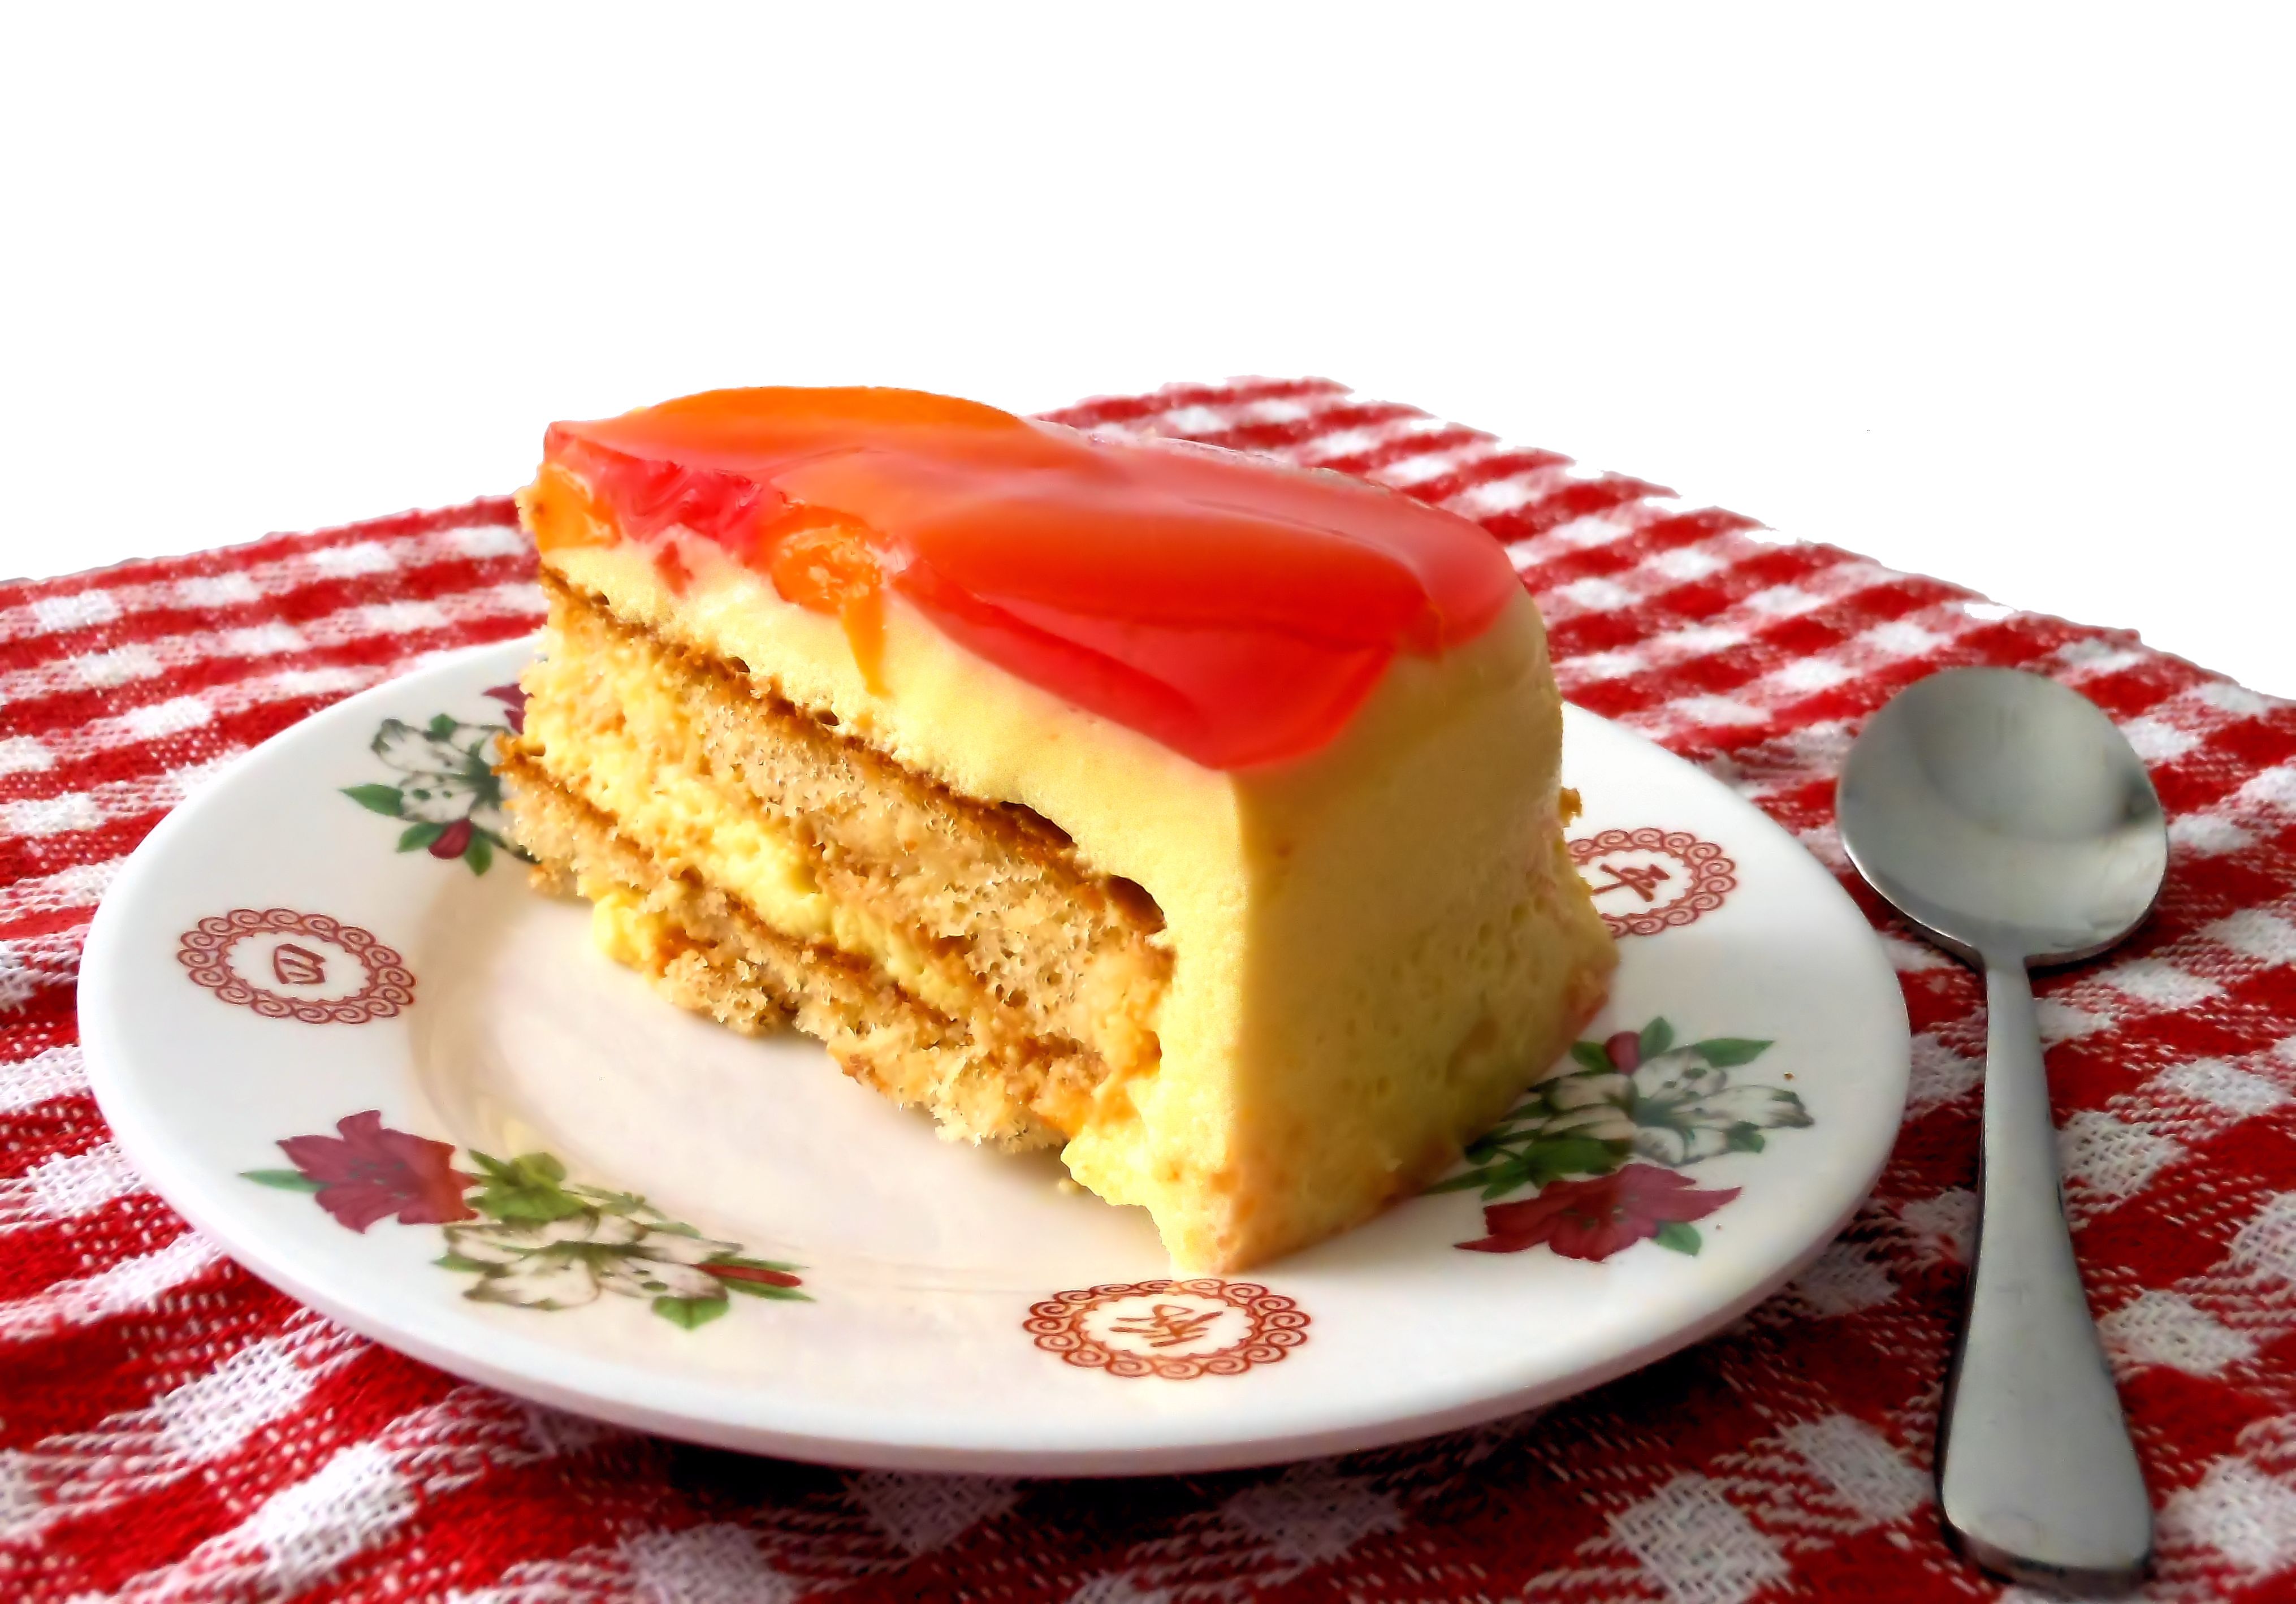 Torta helada - Wikipedia, la enciclopedia libre